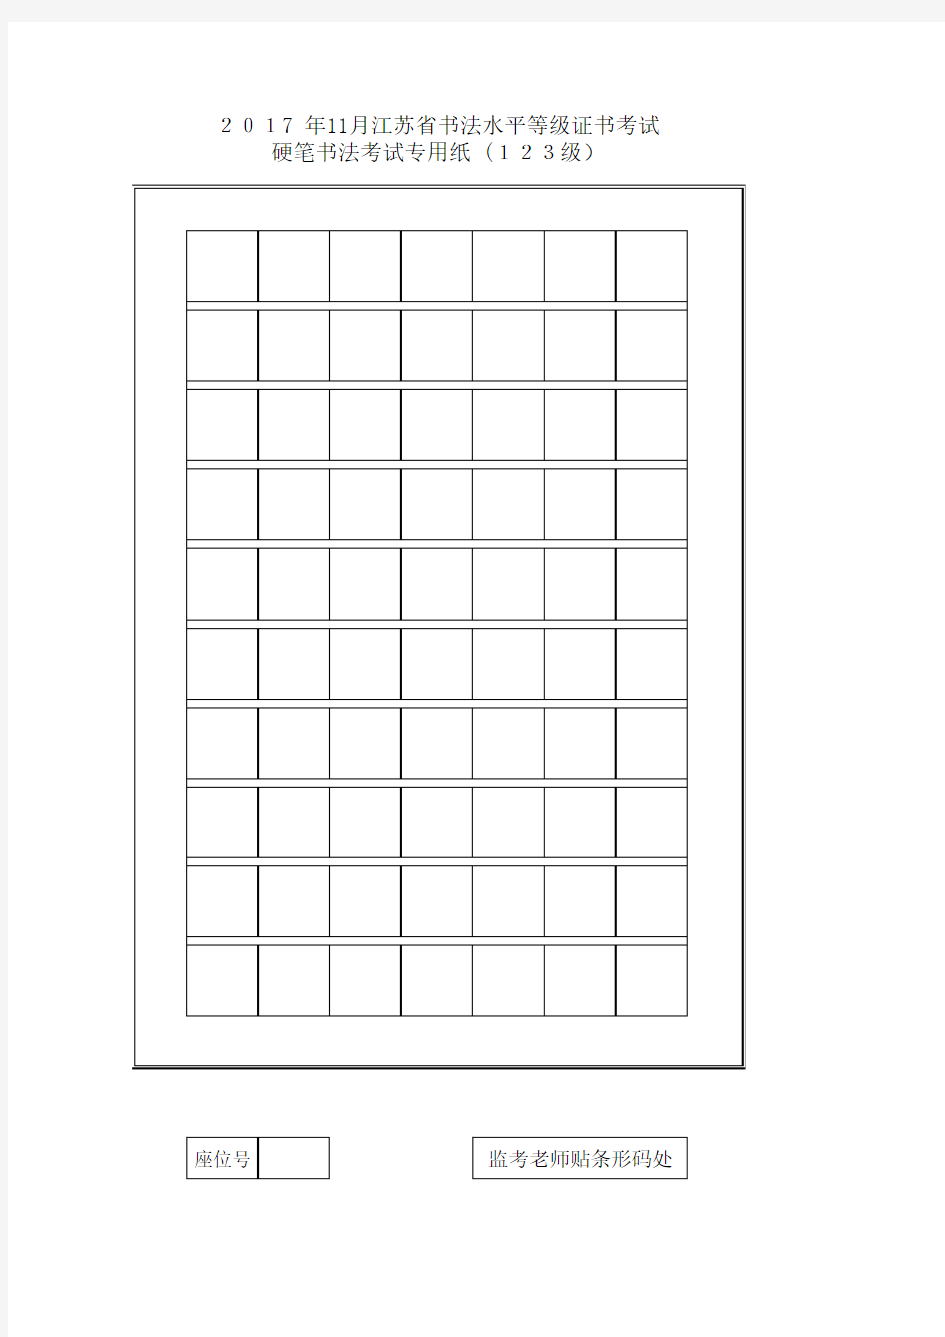 江苏省硬笔书法考试专用纸(1_10级)